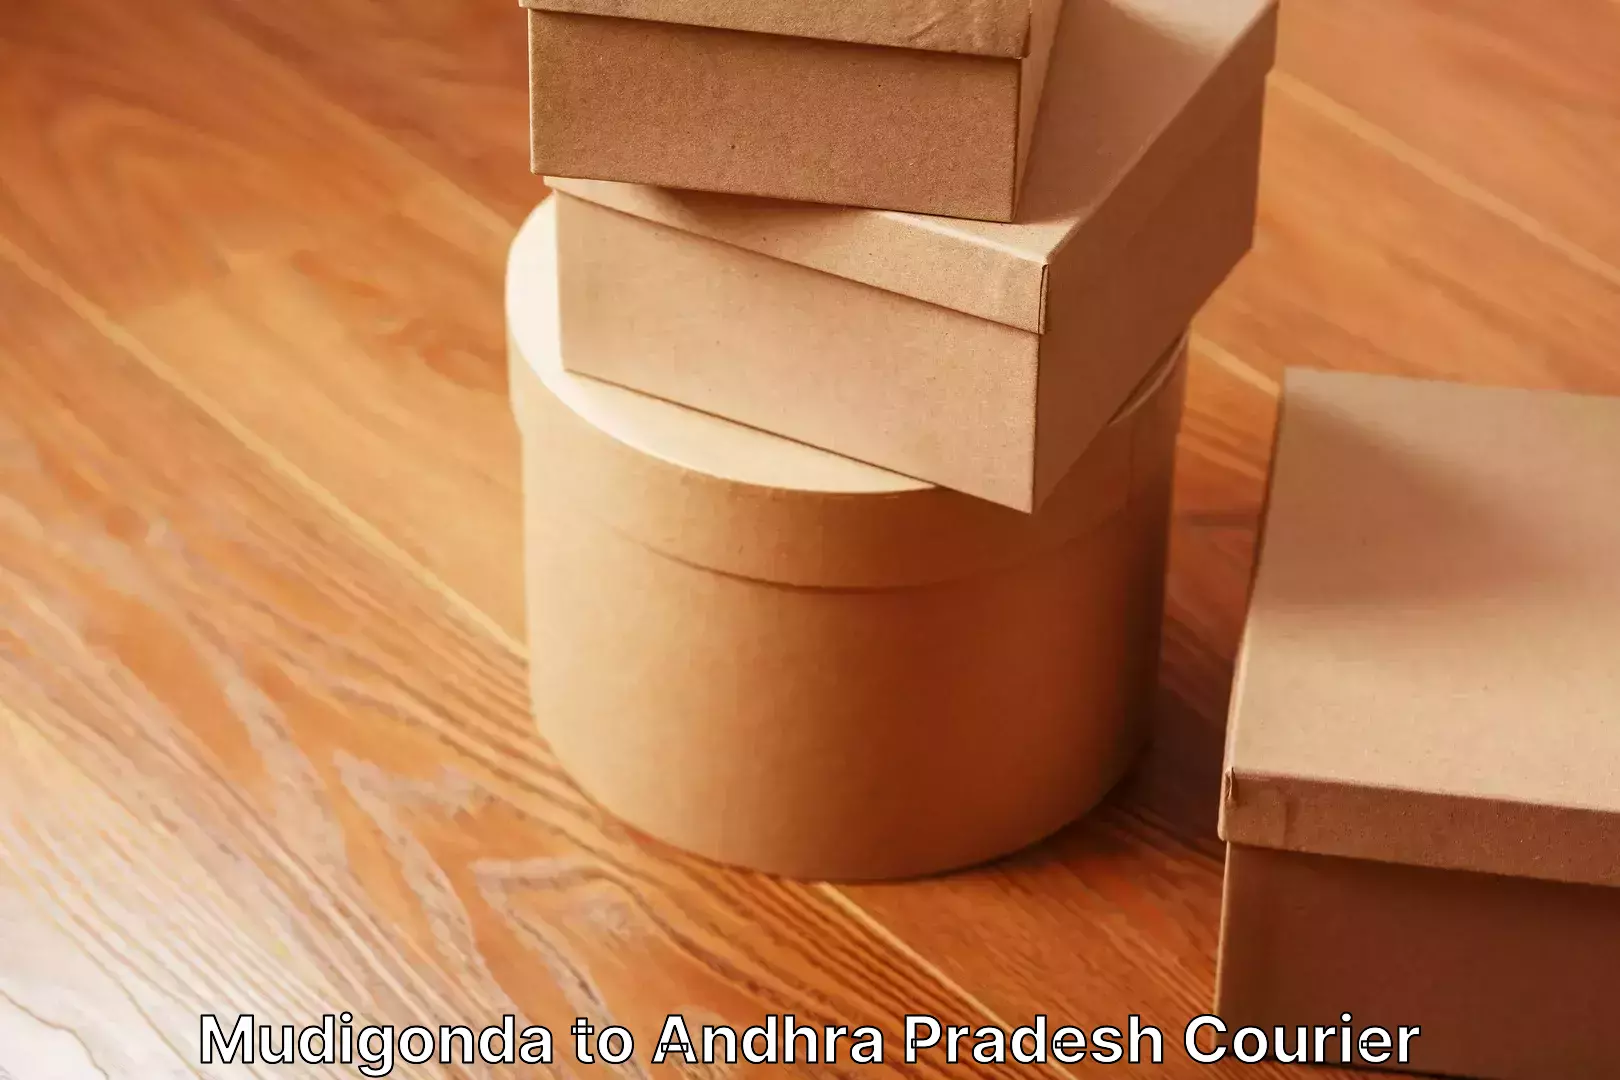 Furniture moving plans Mudigonda to Andhra Pradesh